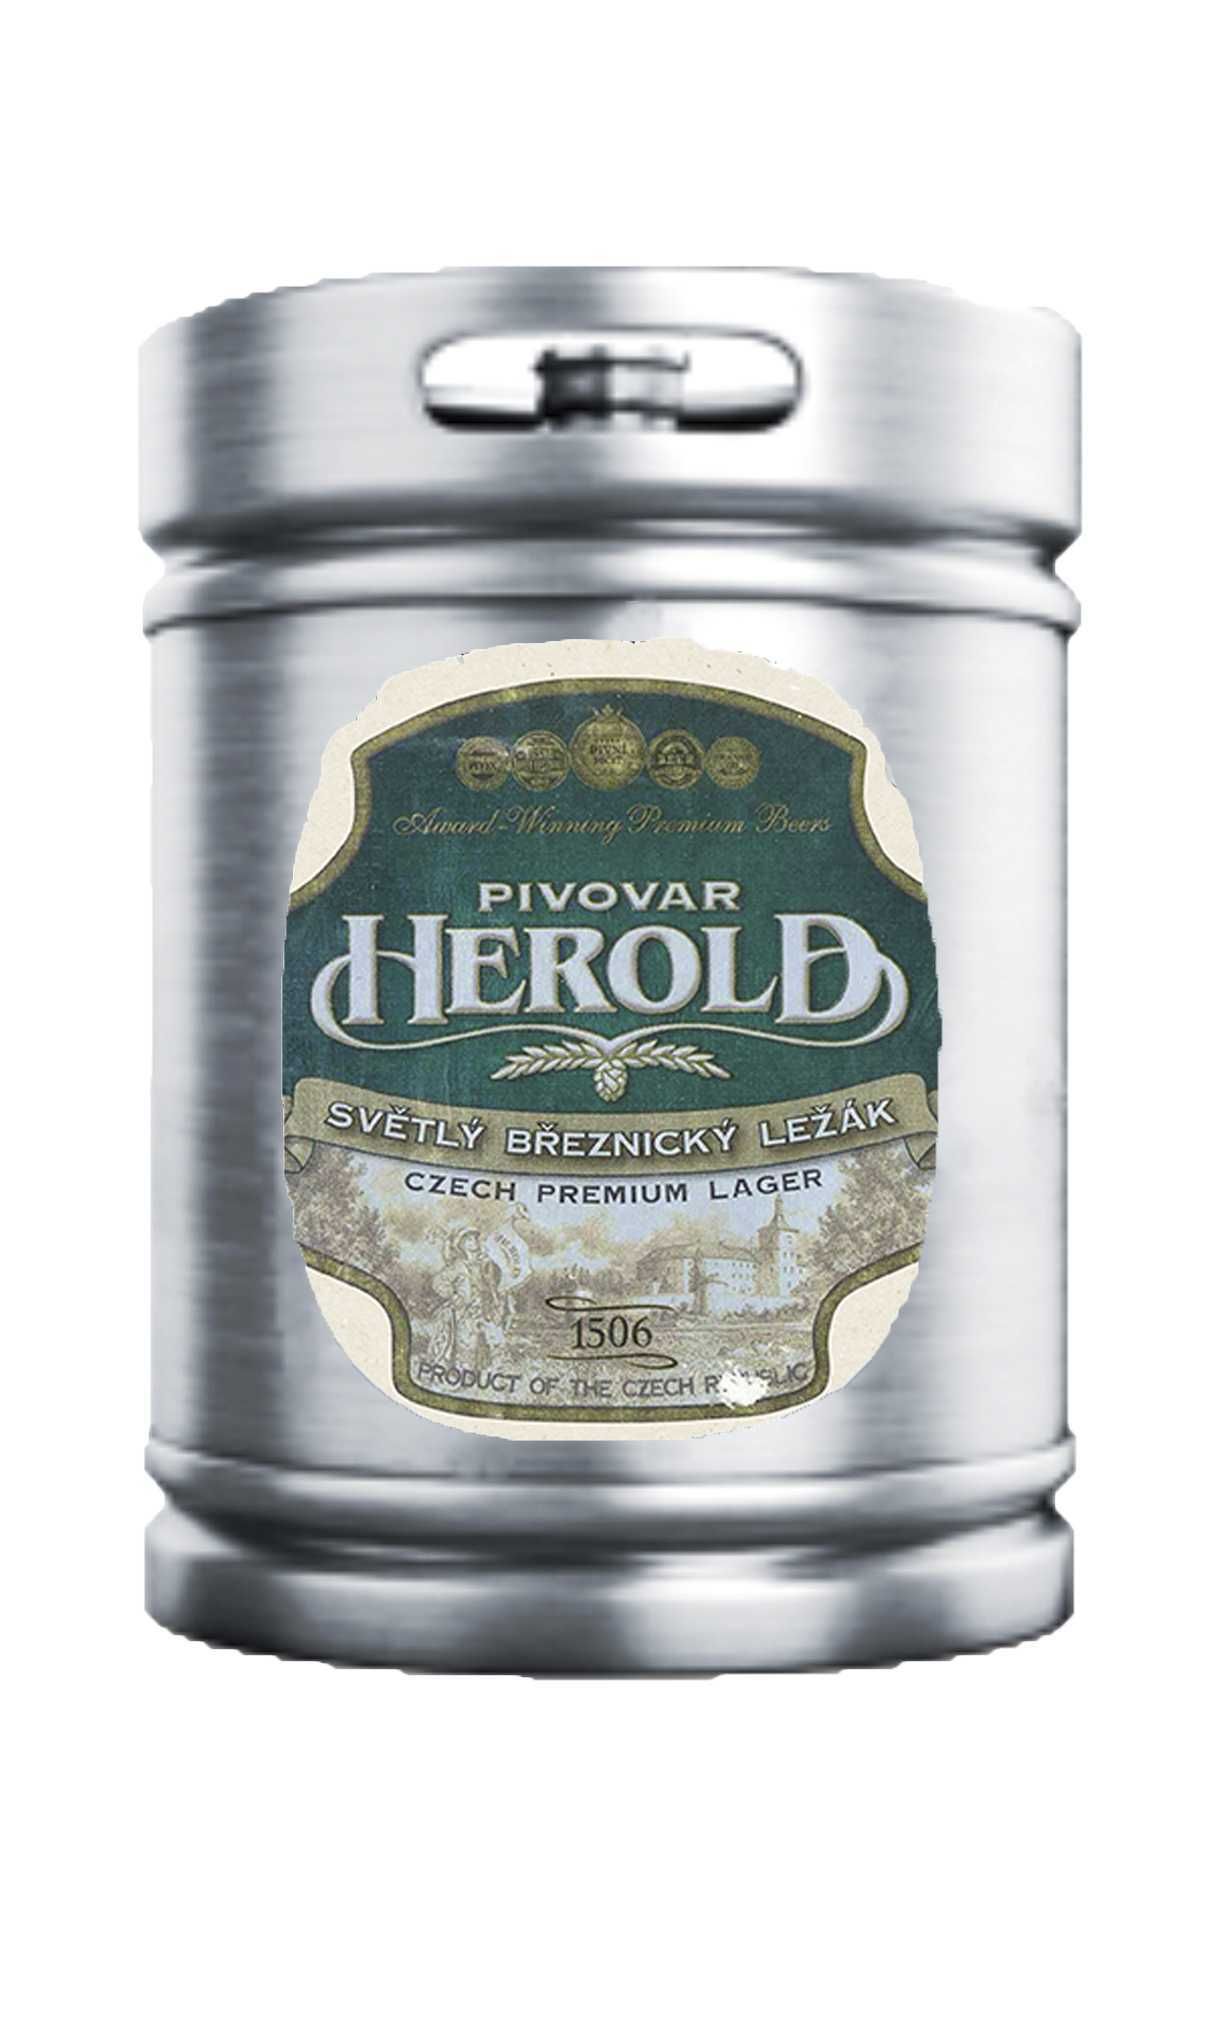 Пиво Херольд Бржезницкий лежак 5,2% (Чехия)